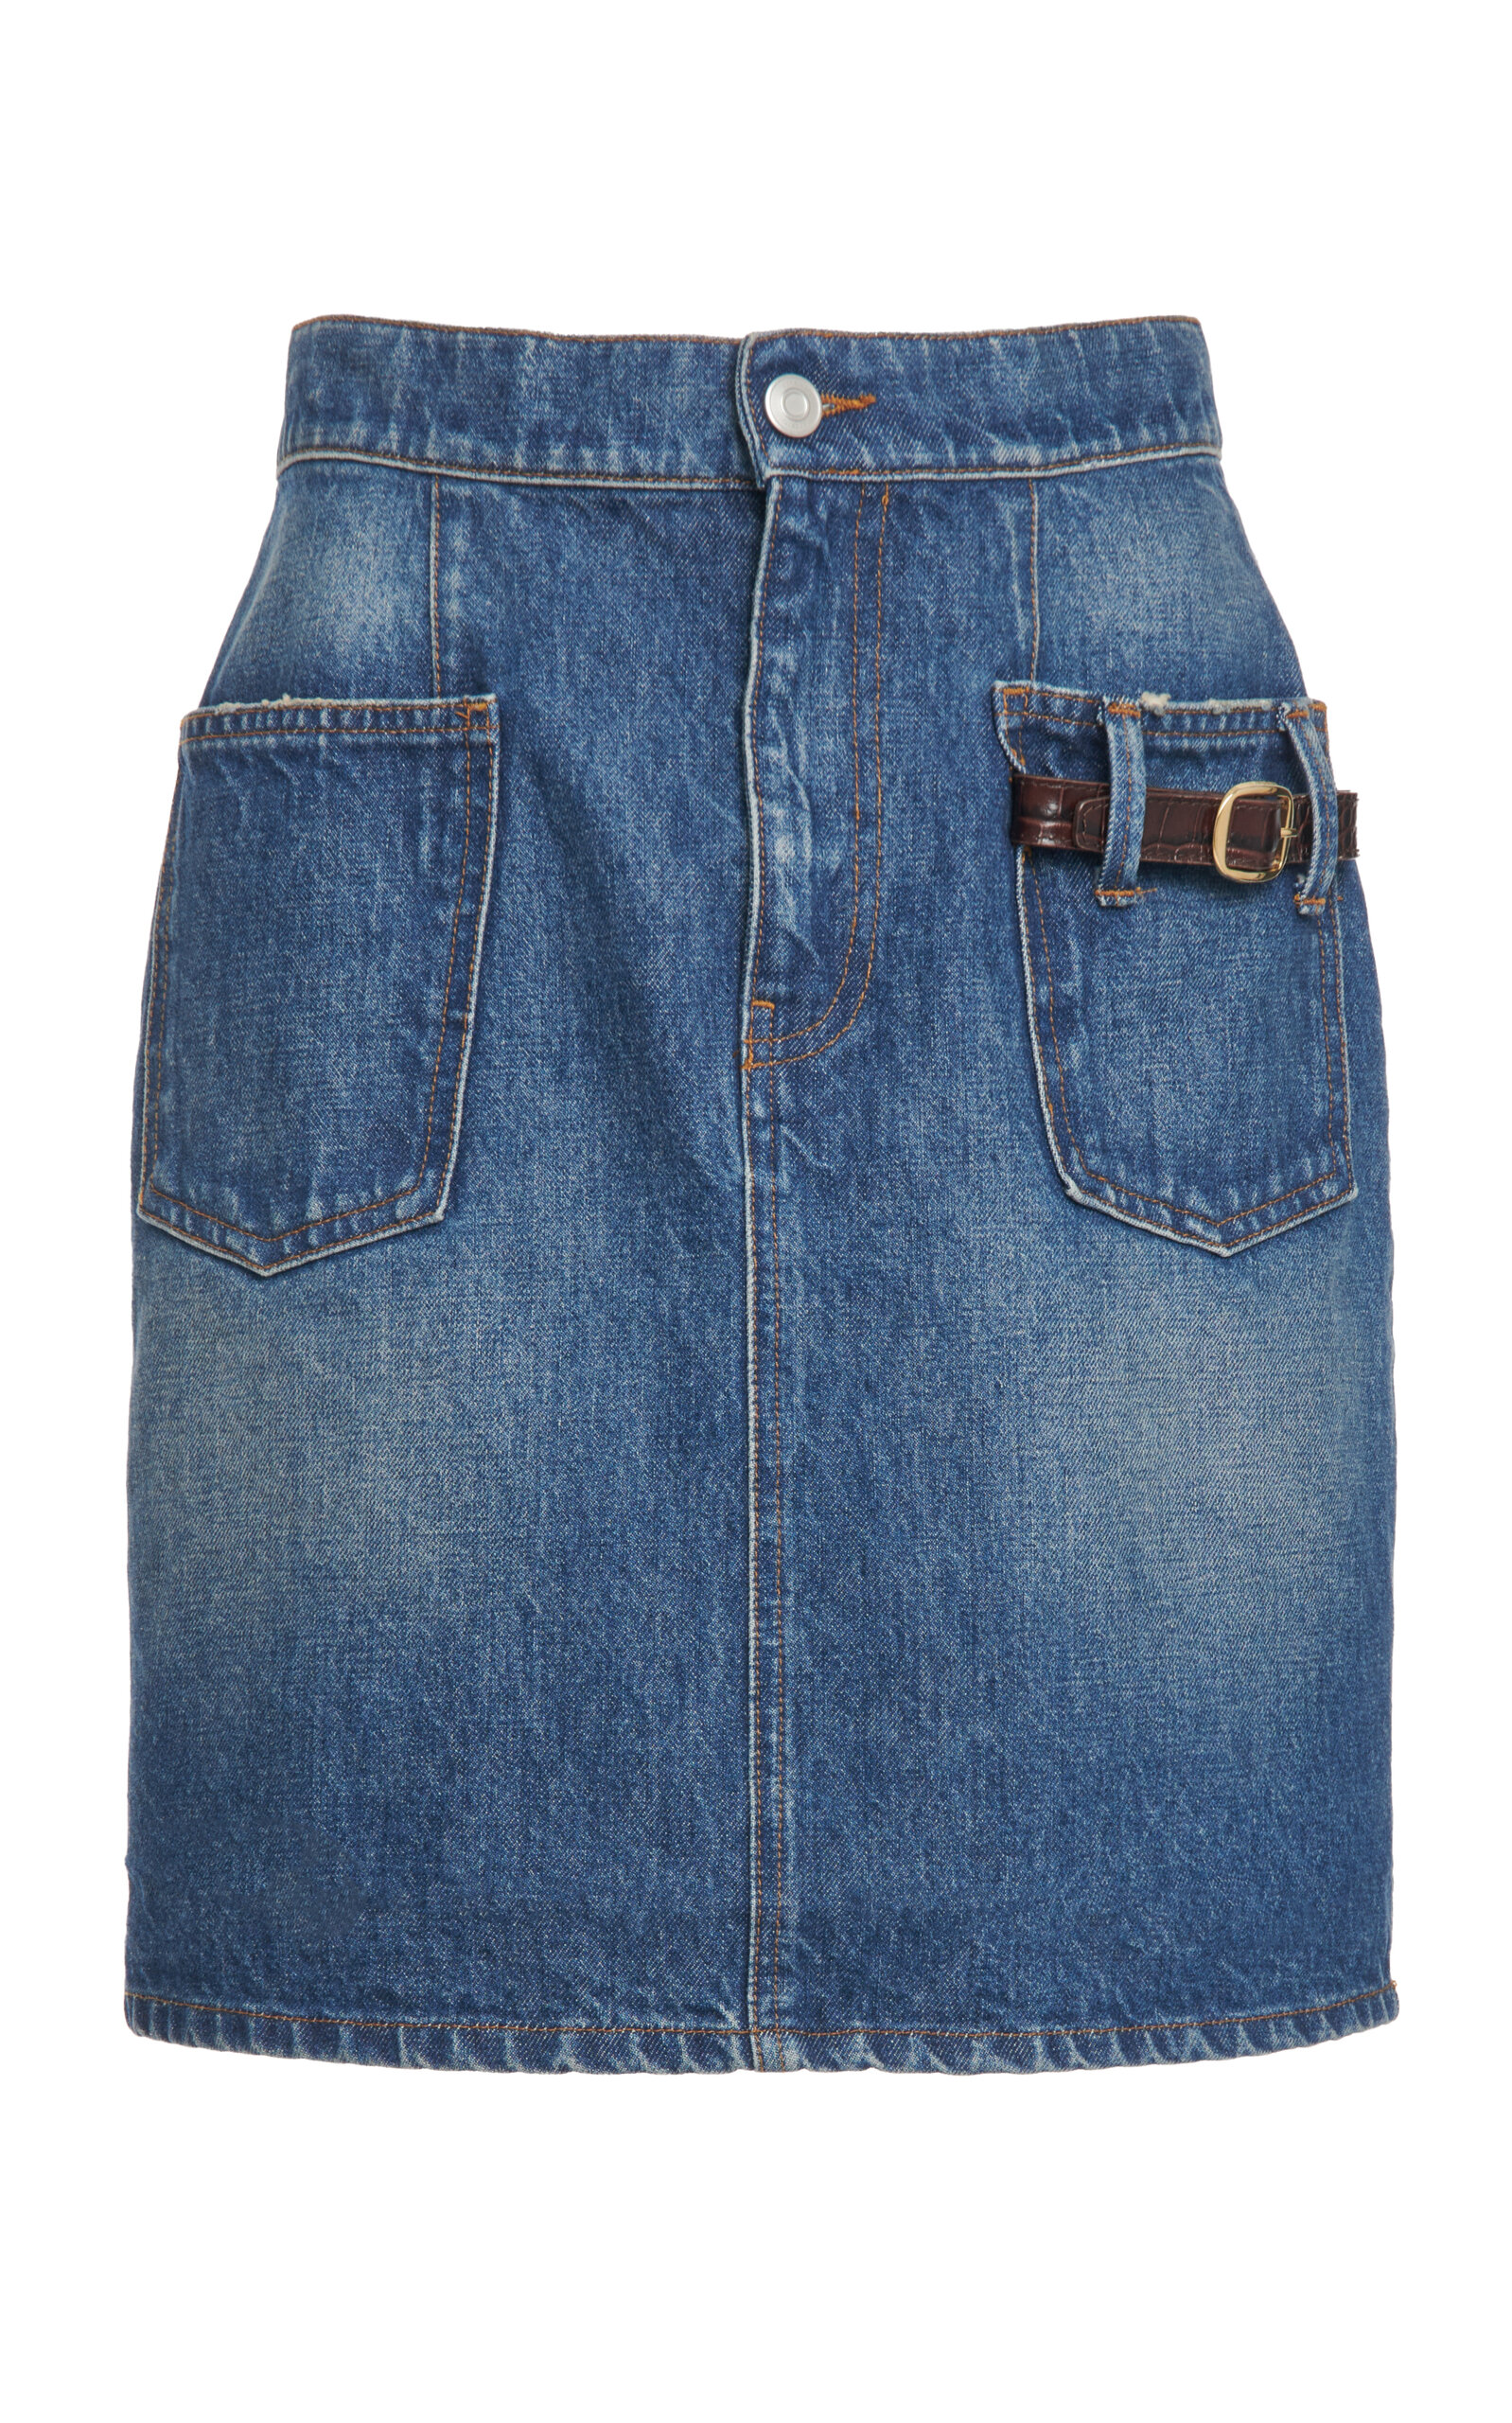 Buckle-Detailed Denim Mini Skirt